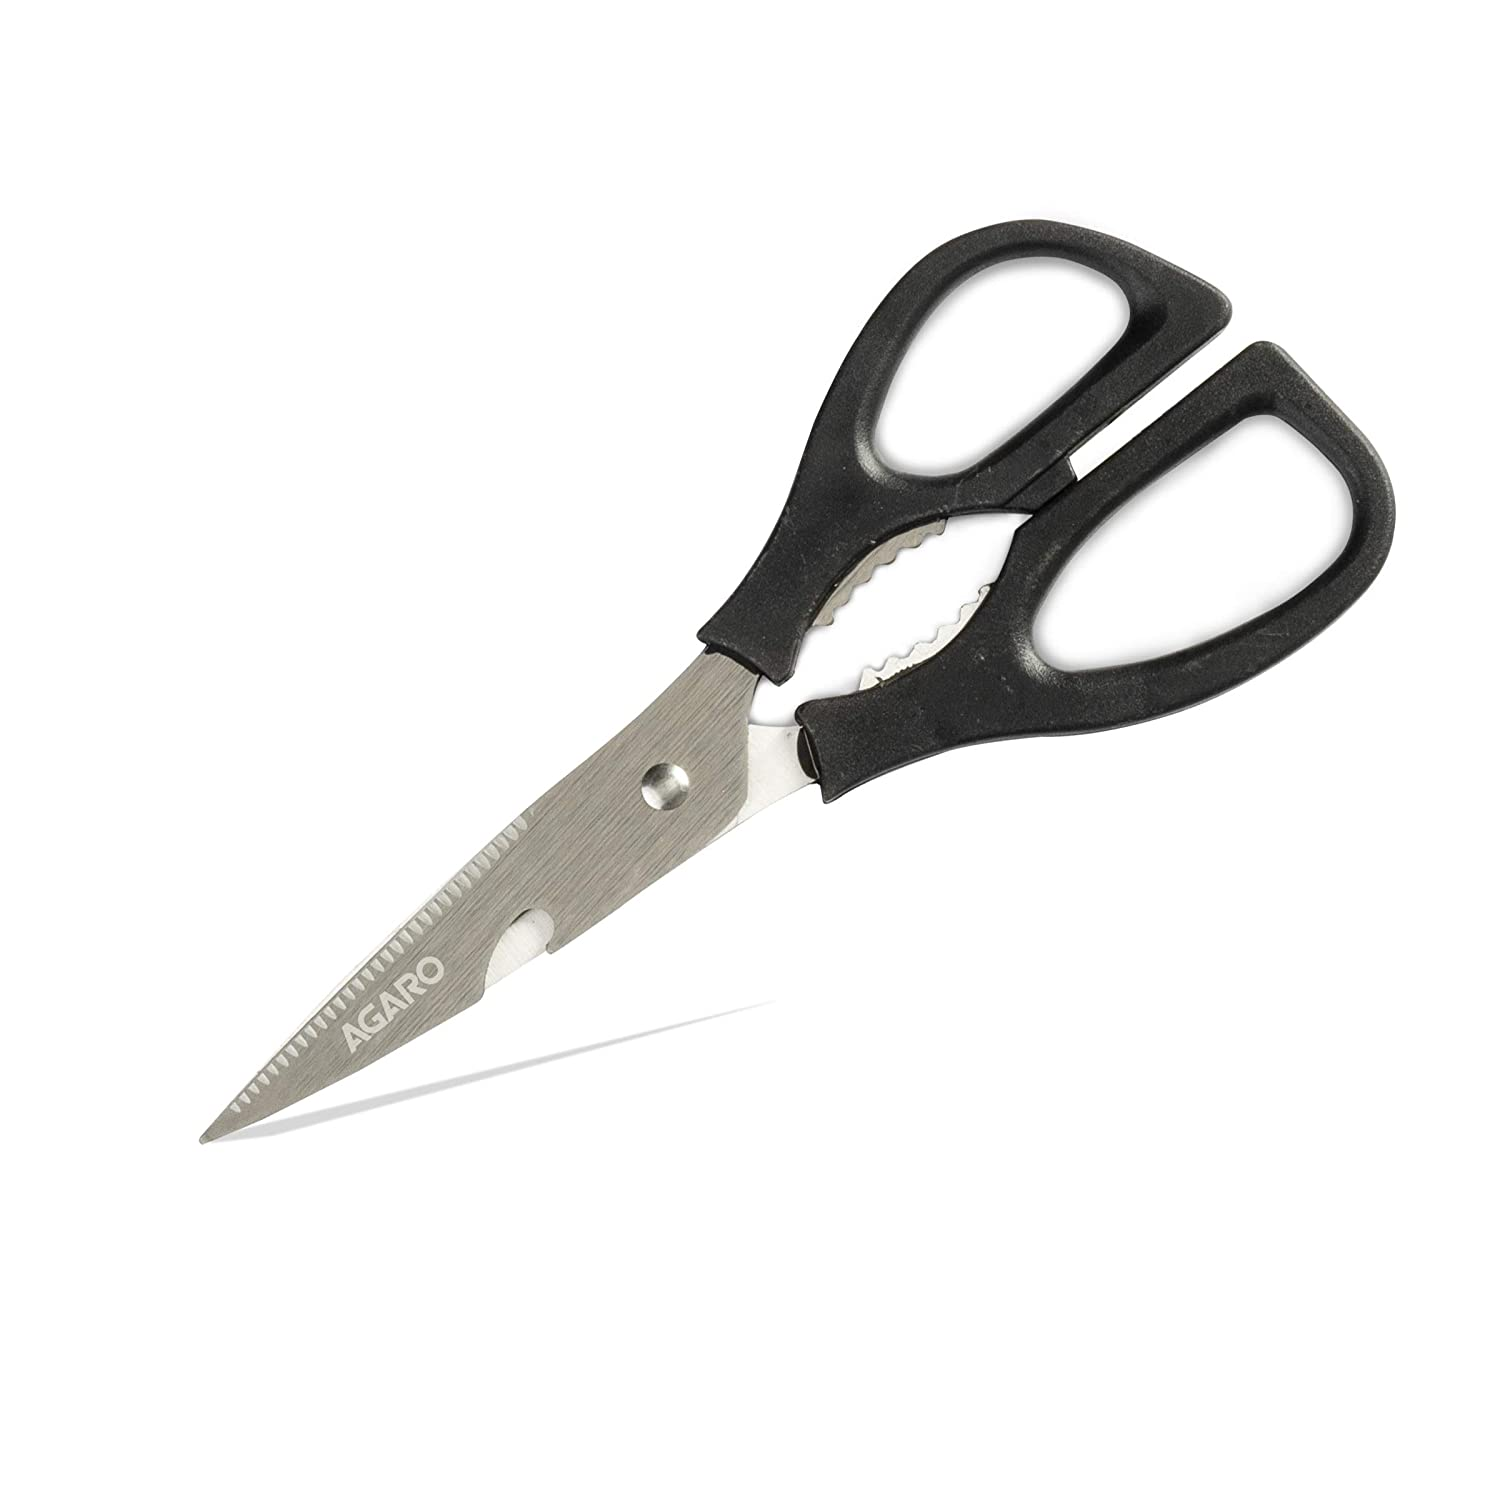 Multipurpose scissors